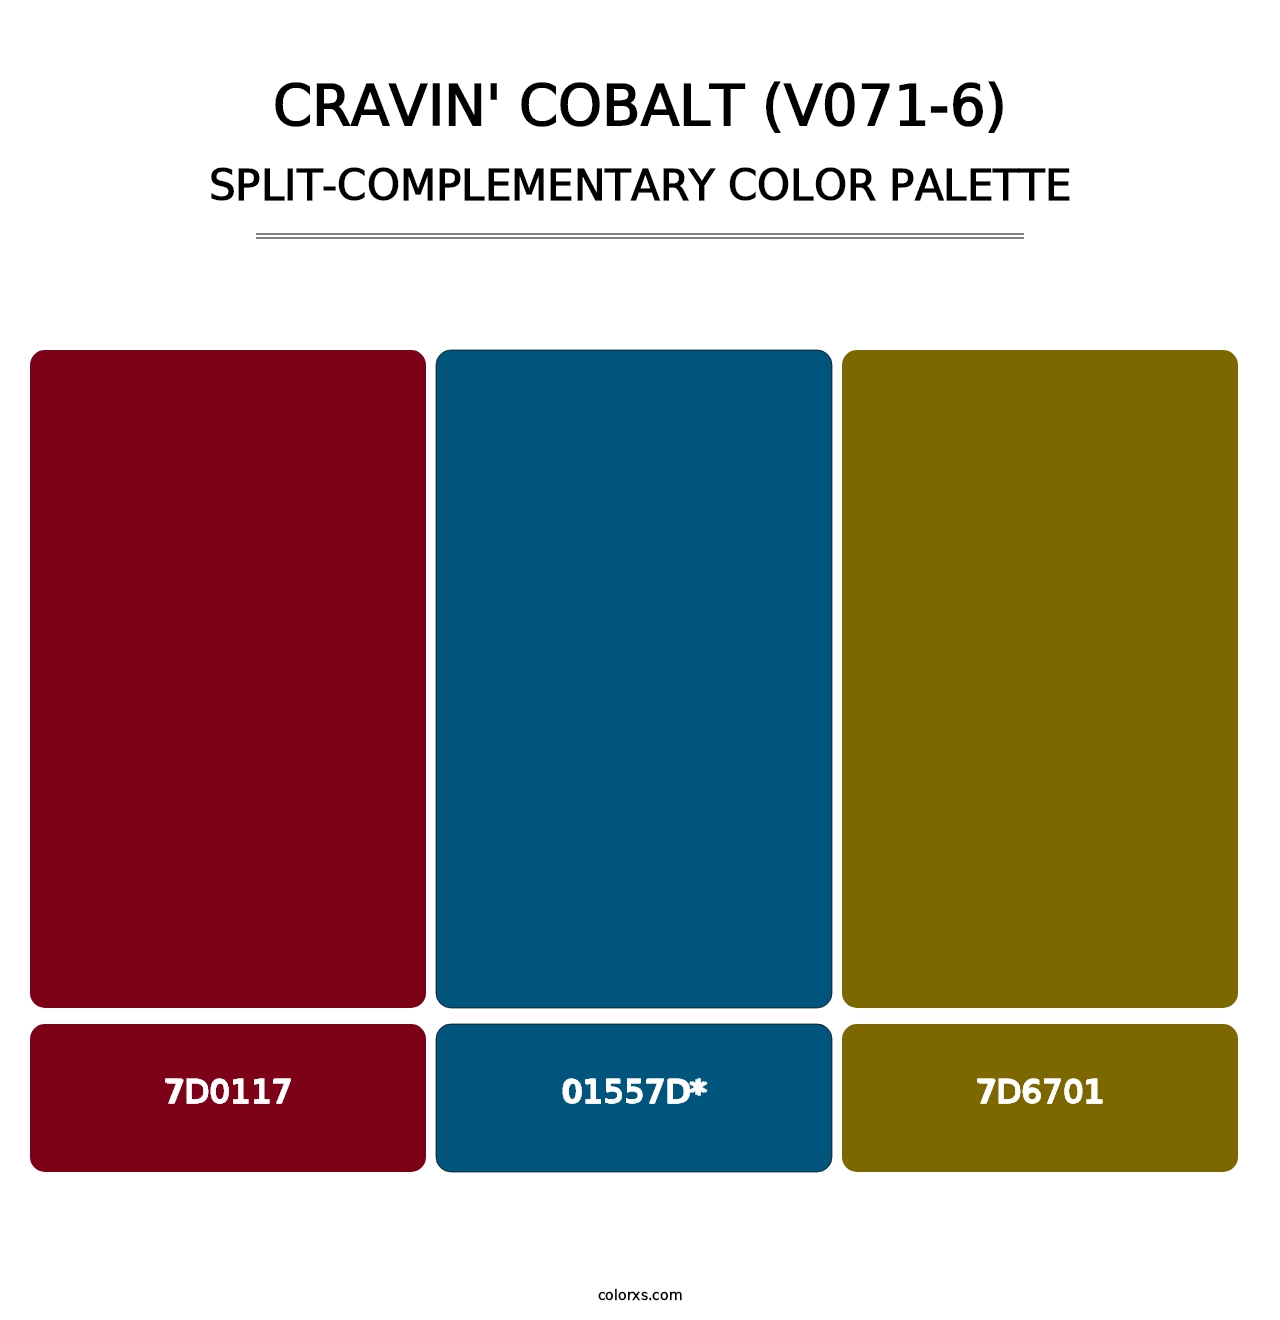 Cravin' Cobalt (V071-6) - Split-Complementary Color Palette